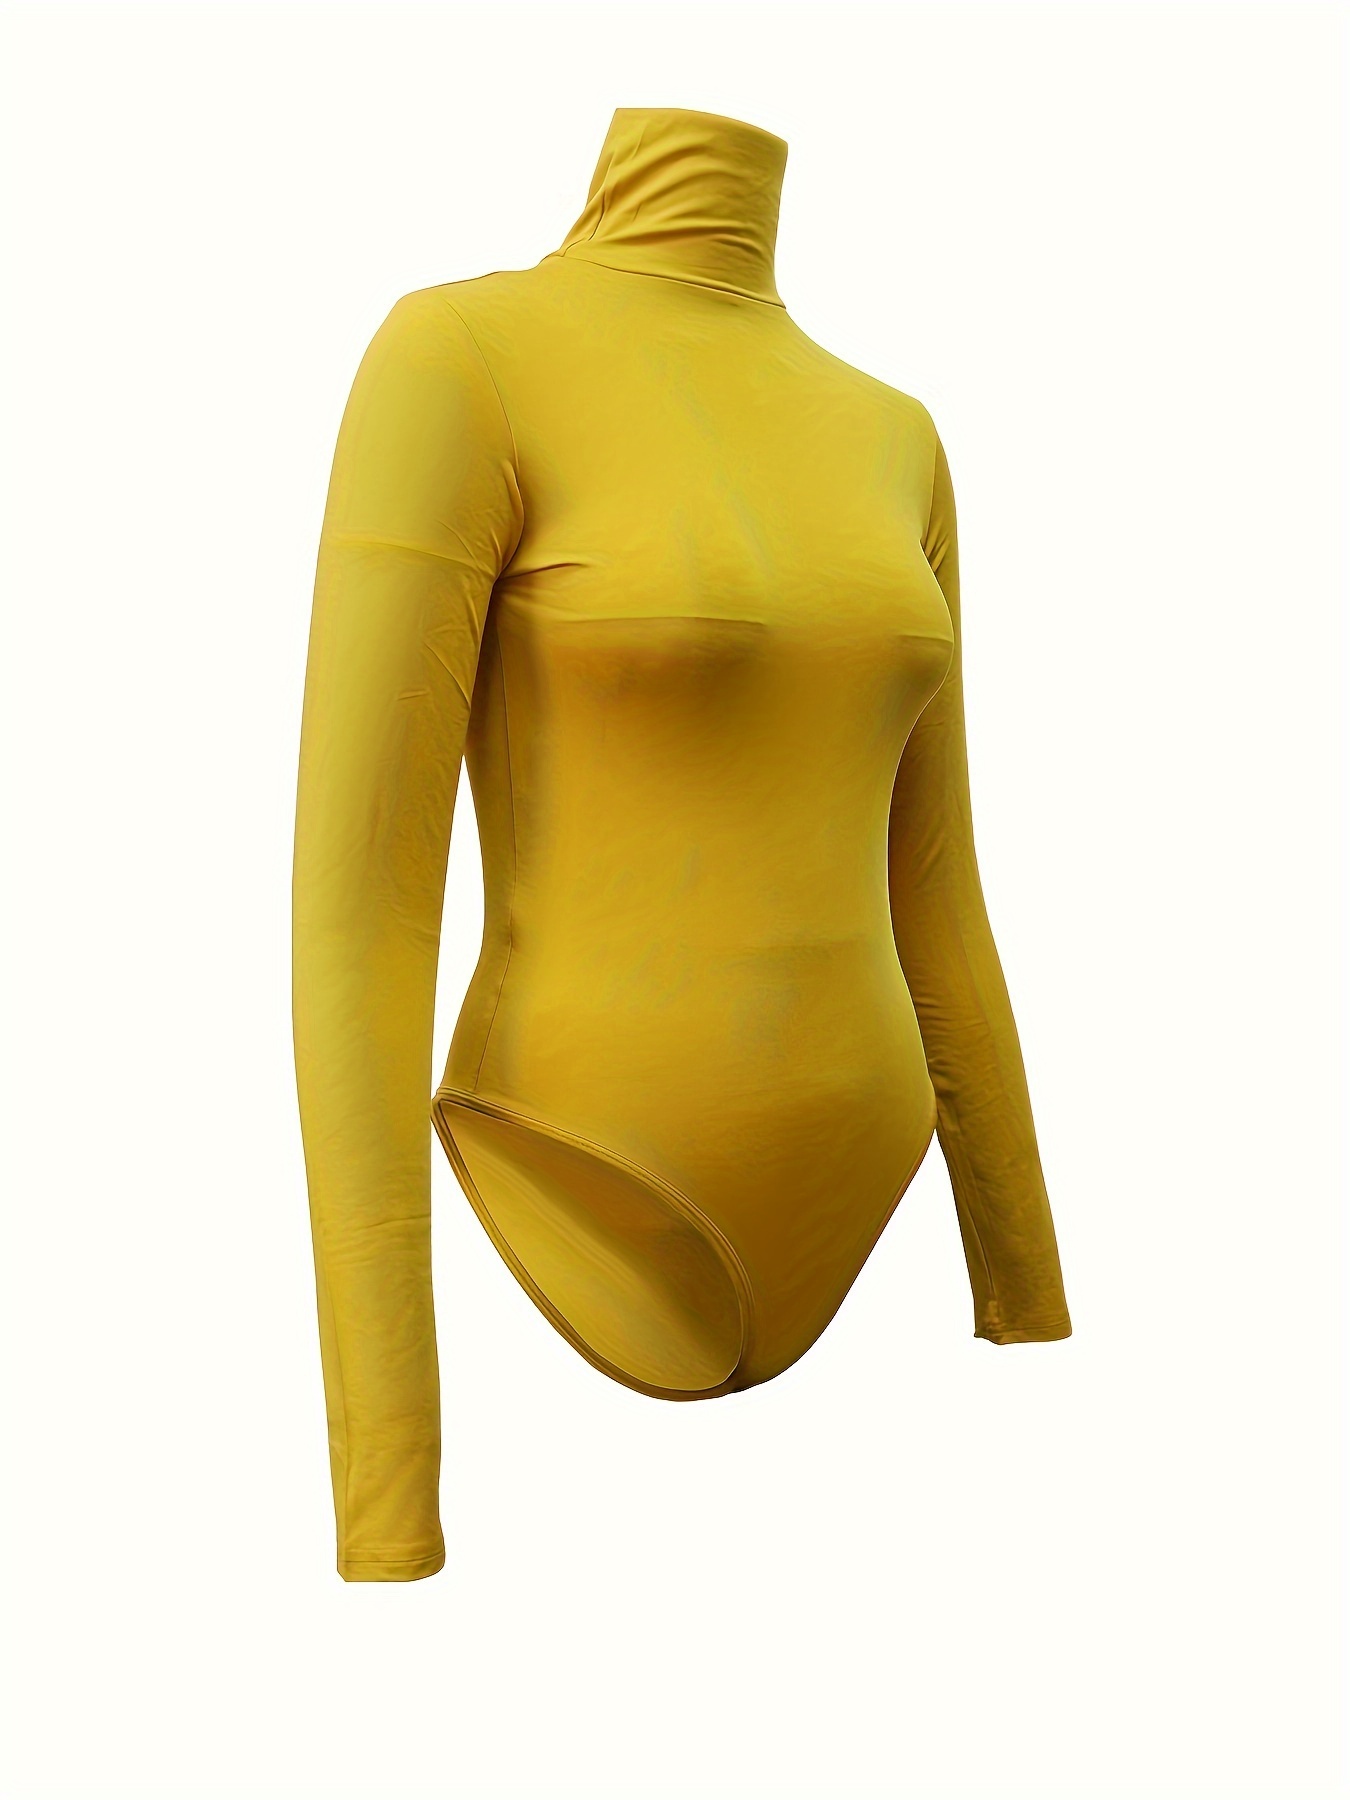 Slimers Turtleneck Bodysuit for Women Long Sleeve Mock Neck Slim